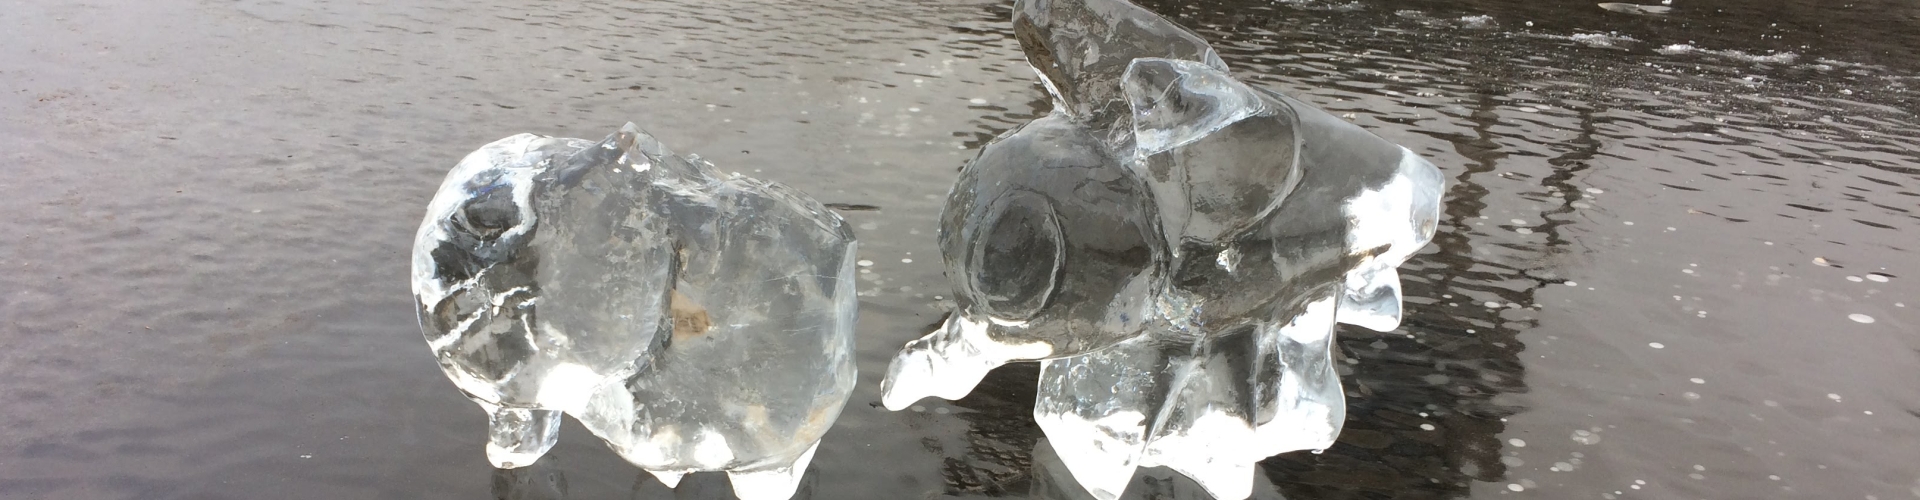 Mooi gelukt ijssculptuur van een vlieg. Gemaakt tijdens de workshop ijssculpturen voor scholen en bso